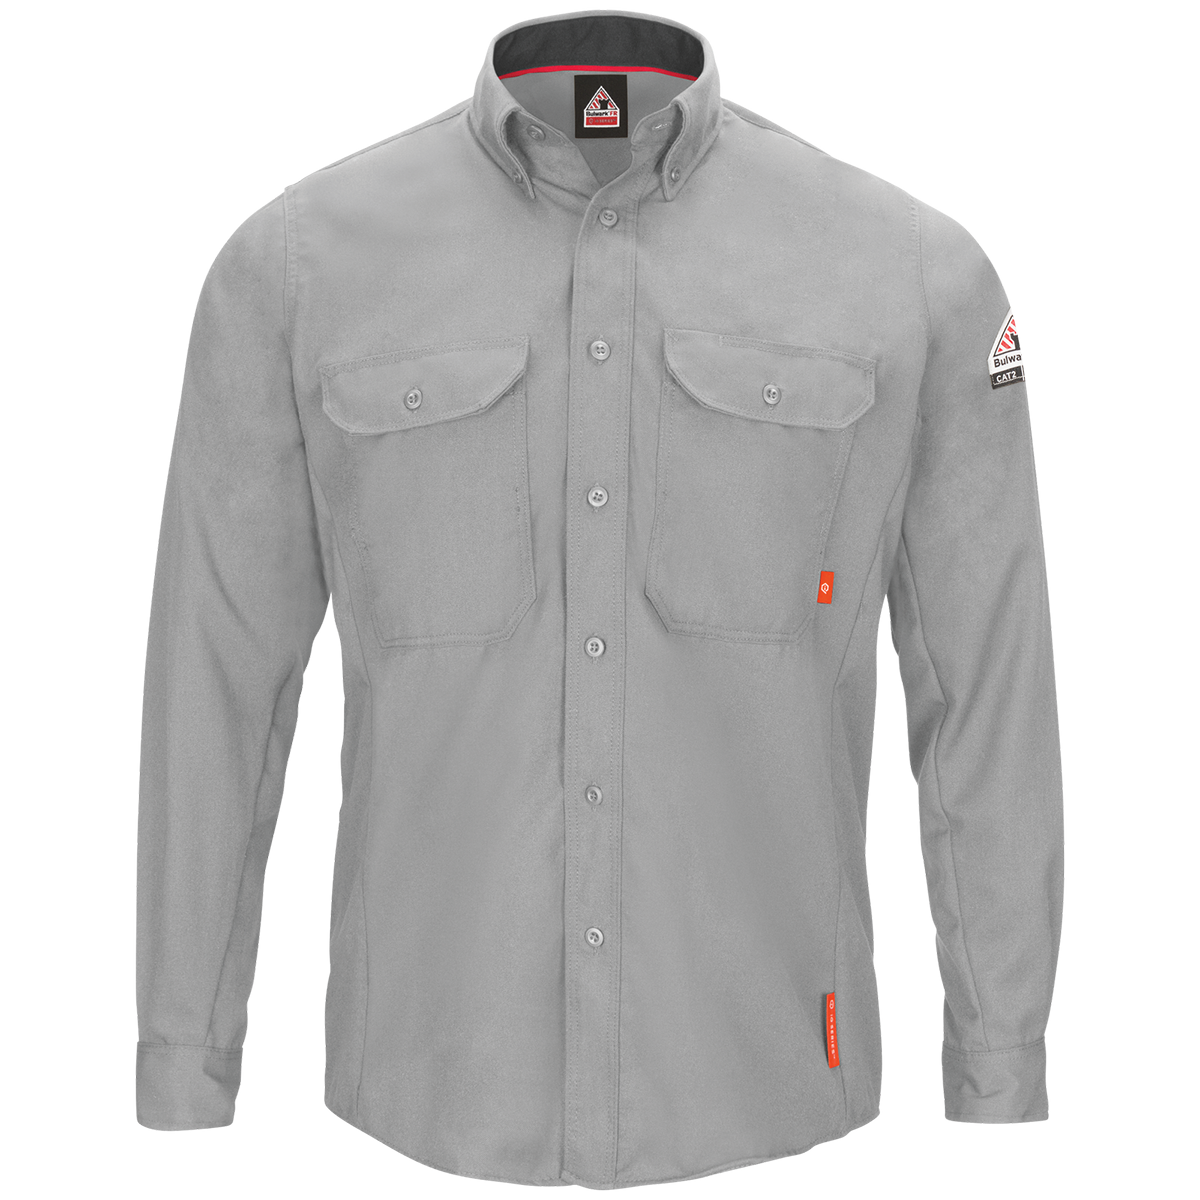 Men's FR IQ Series Comfort Lightweight Button Down Shirt in Gray